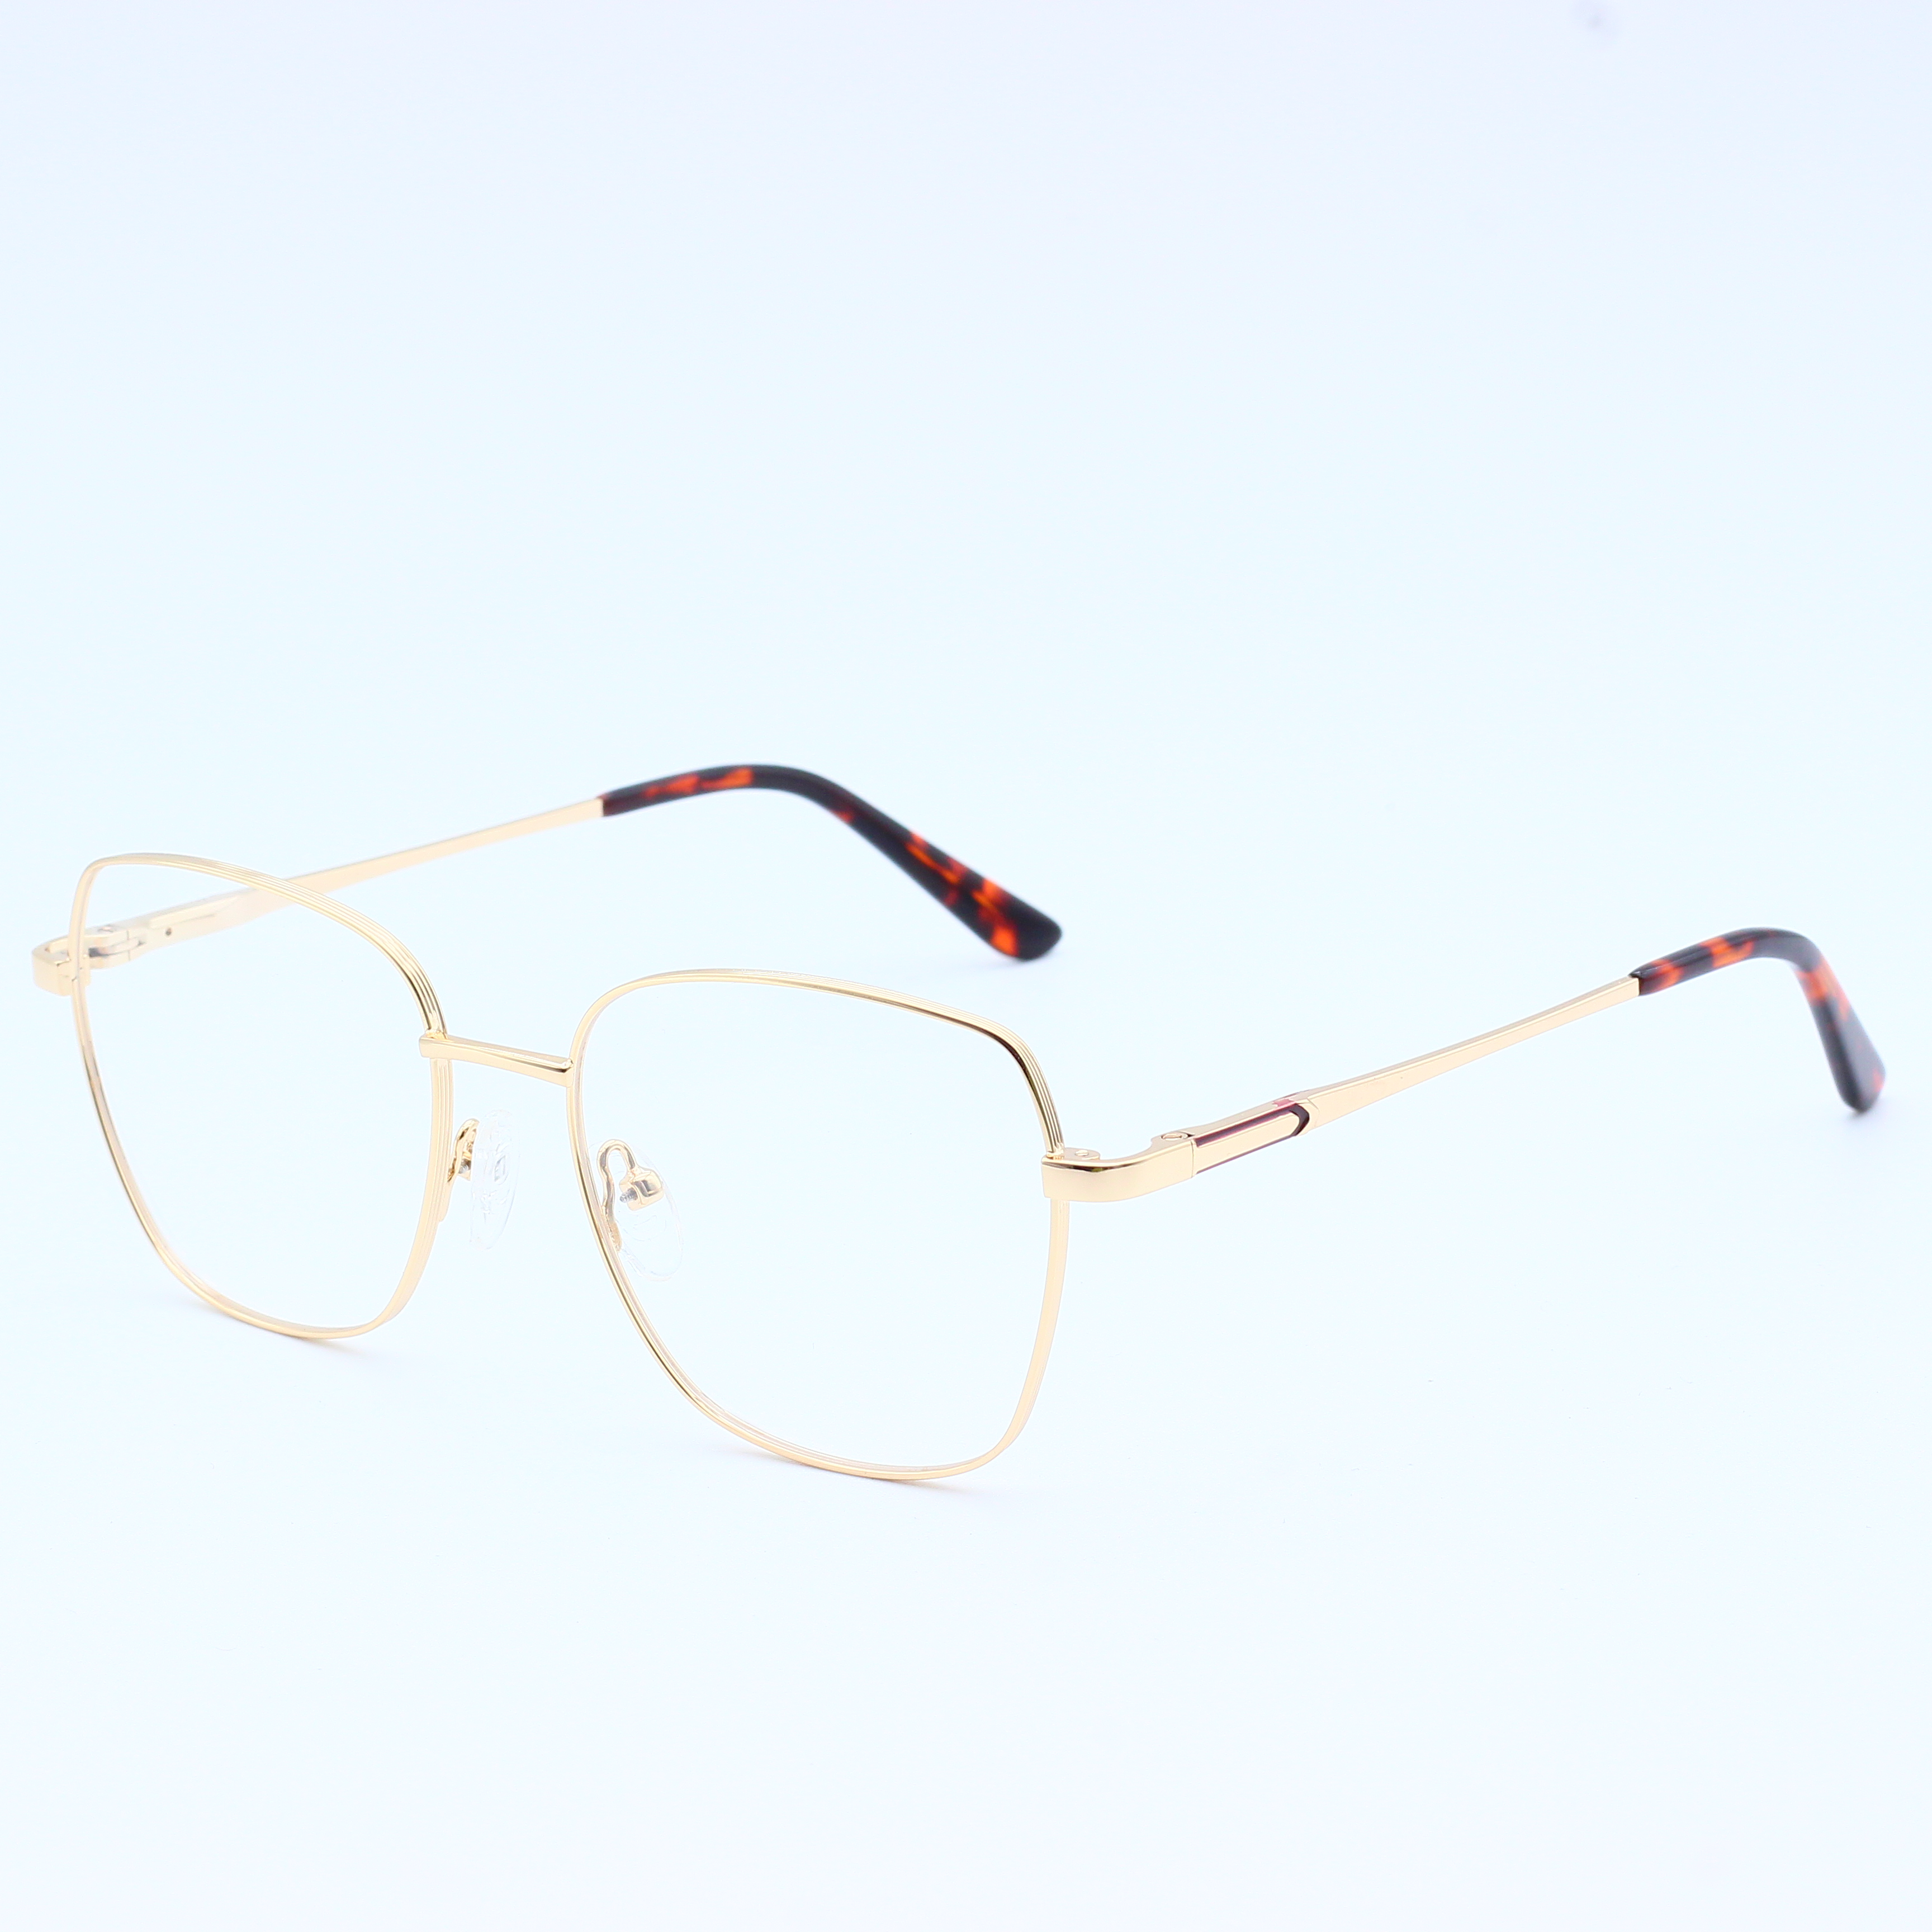 Best selling combine metal eyeglasses frames (6)